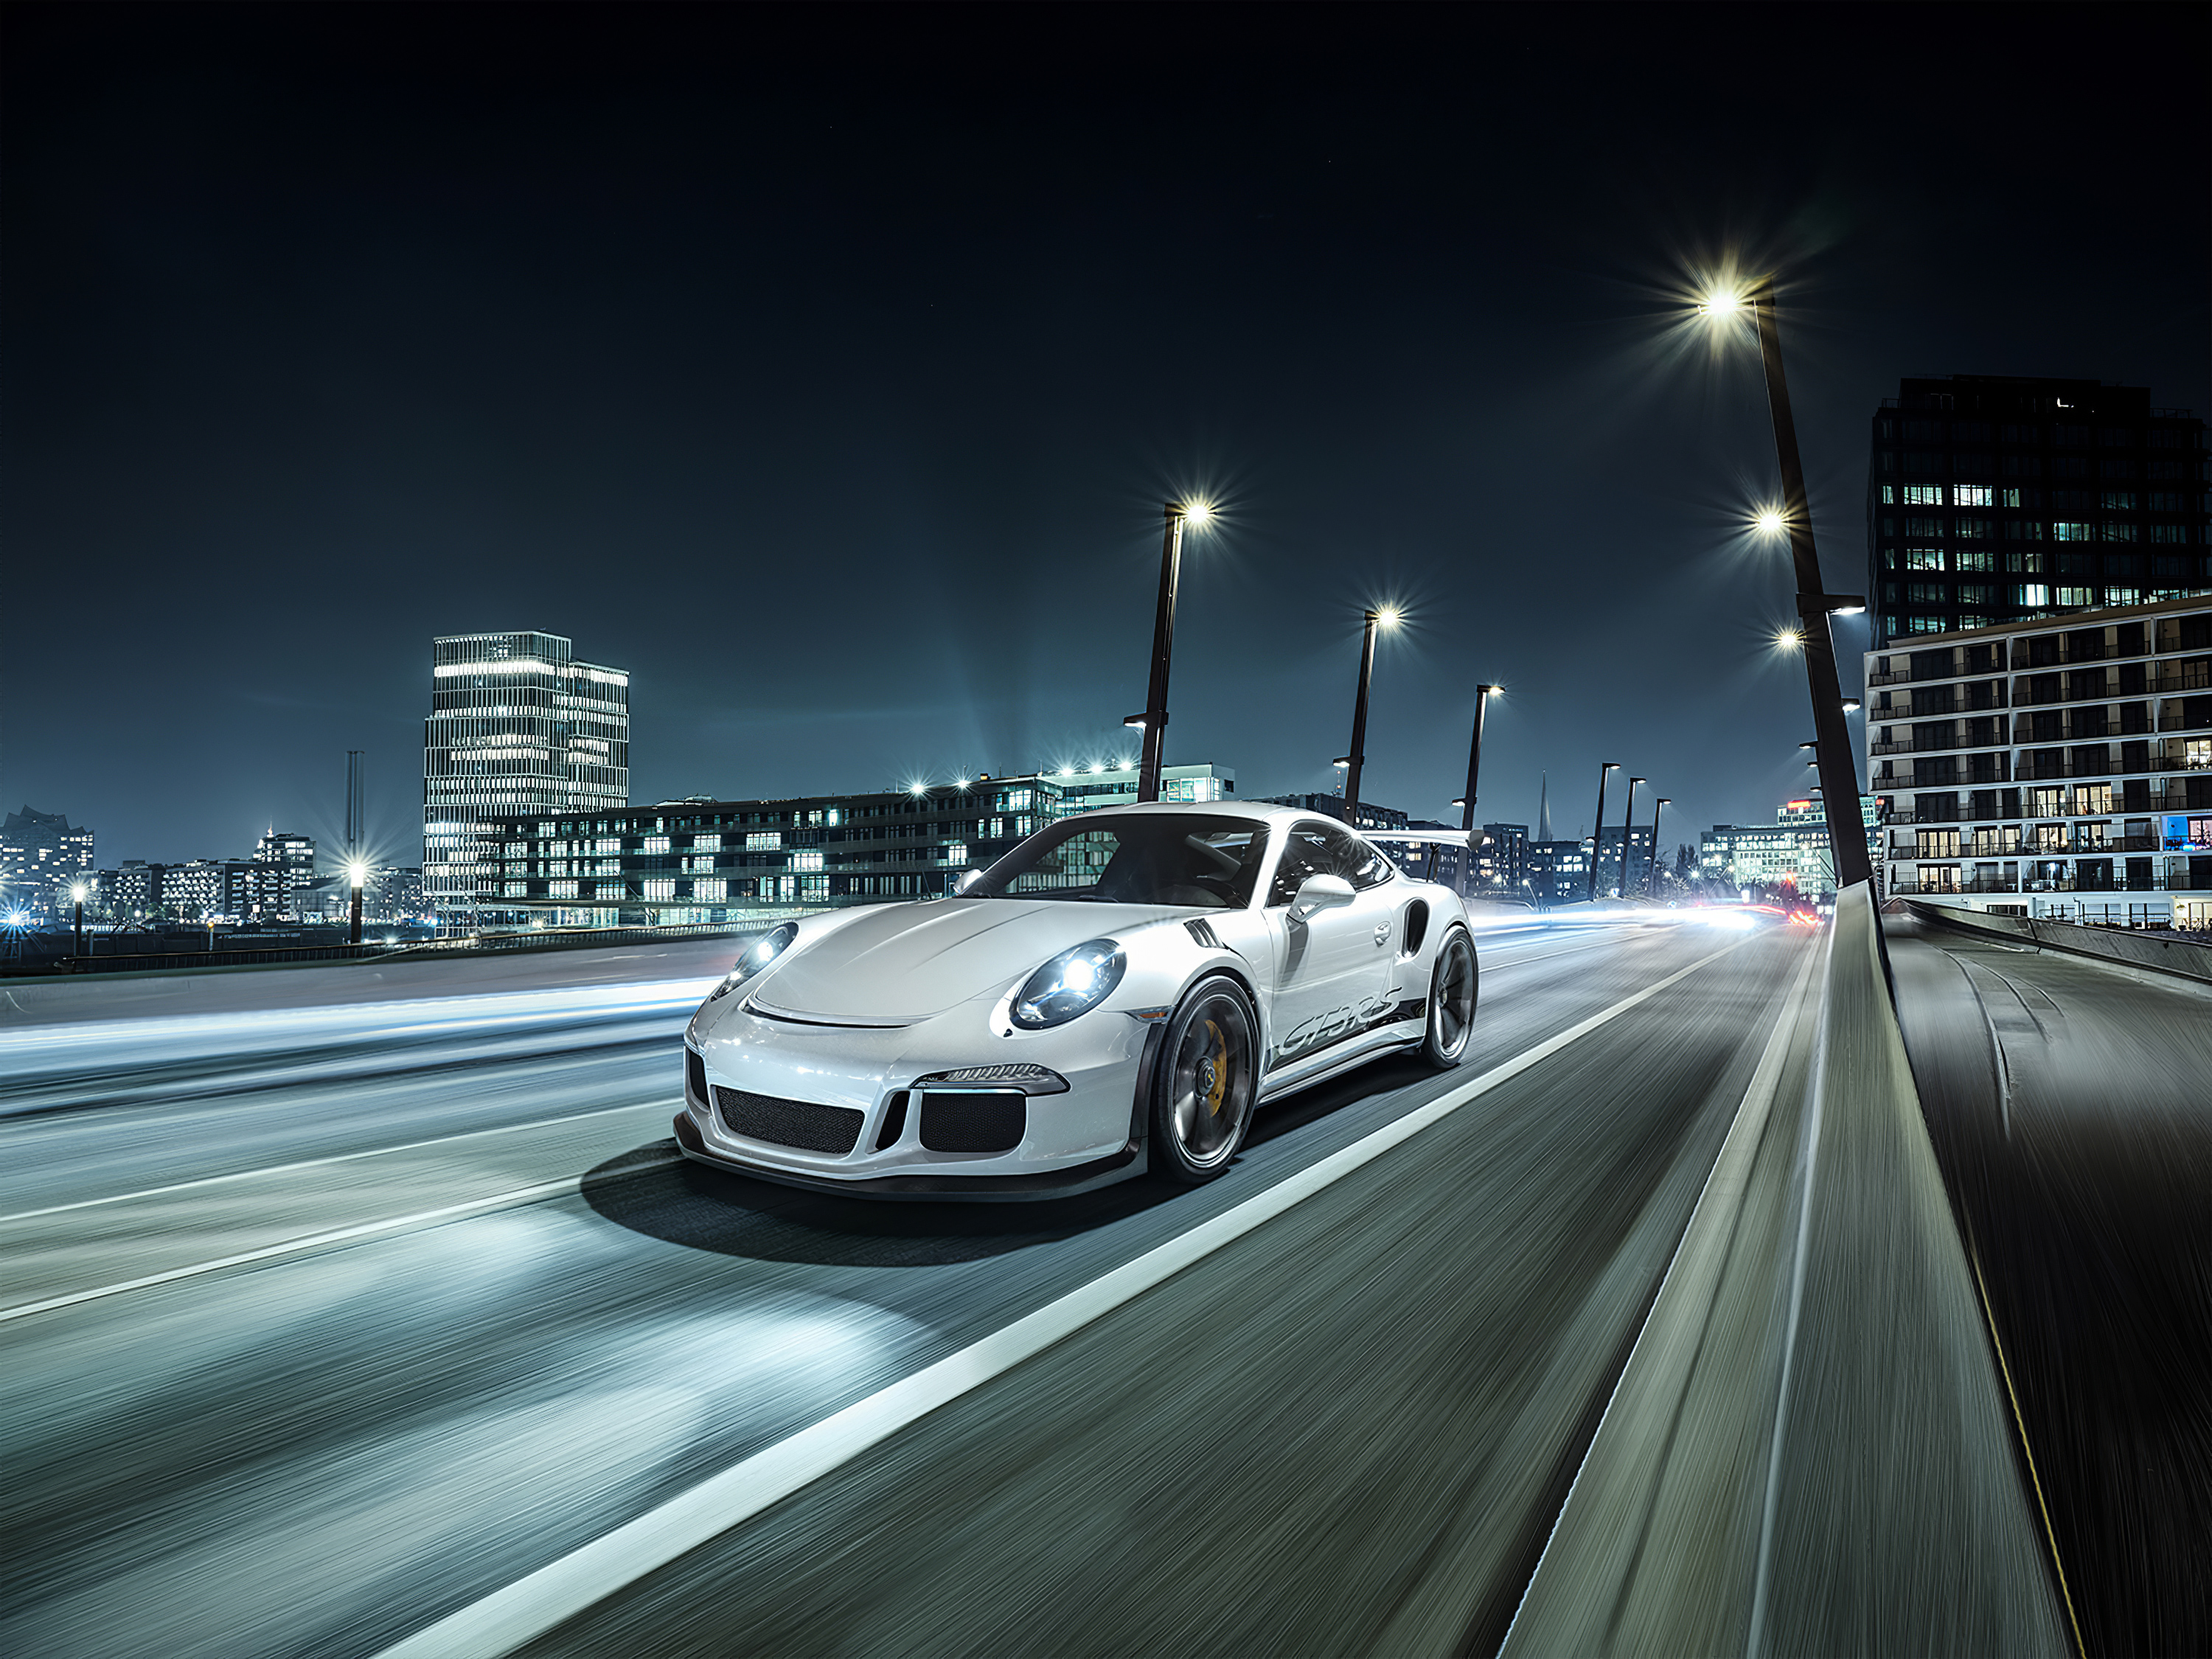 Картинка с белым Porsche едет по ночному городу